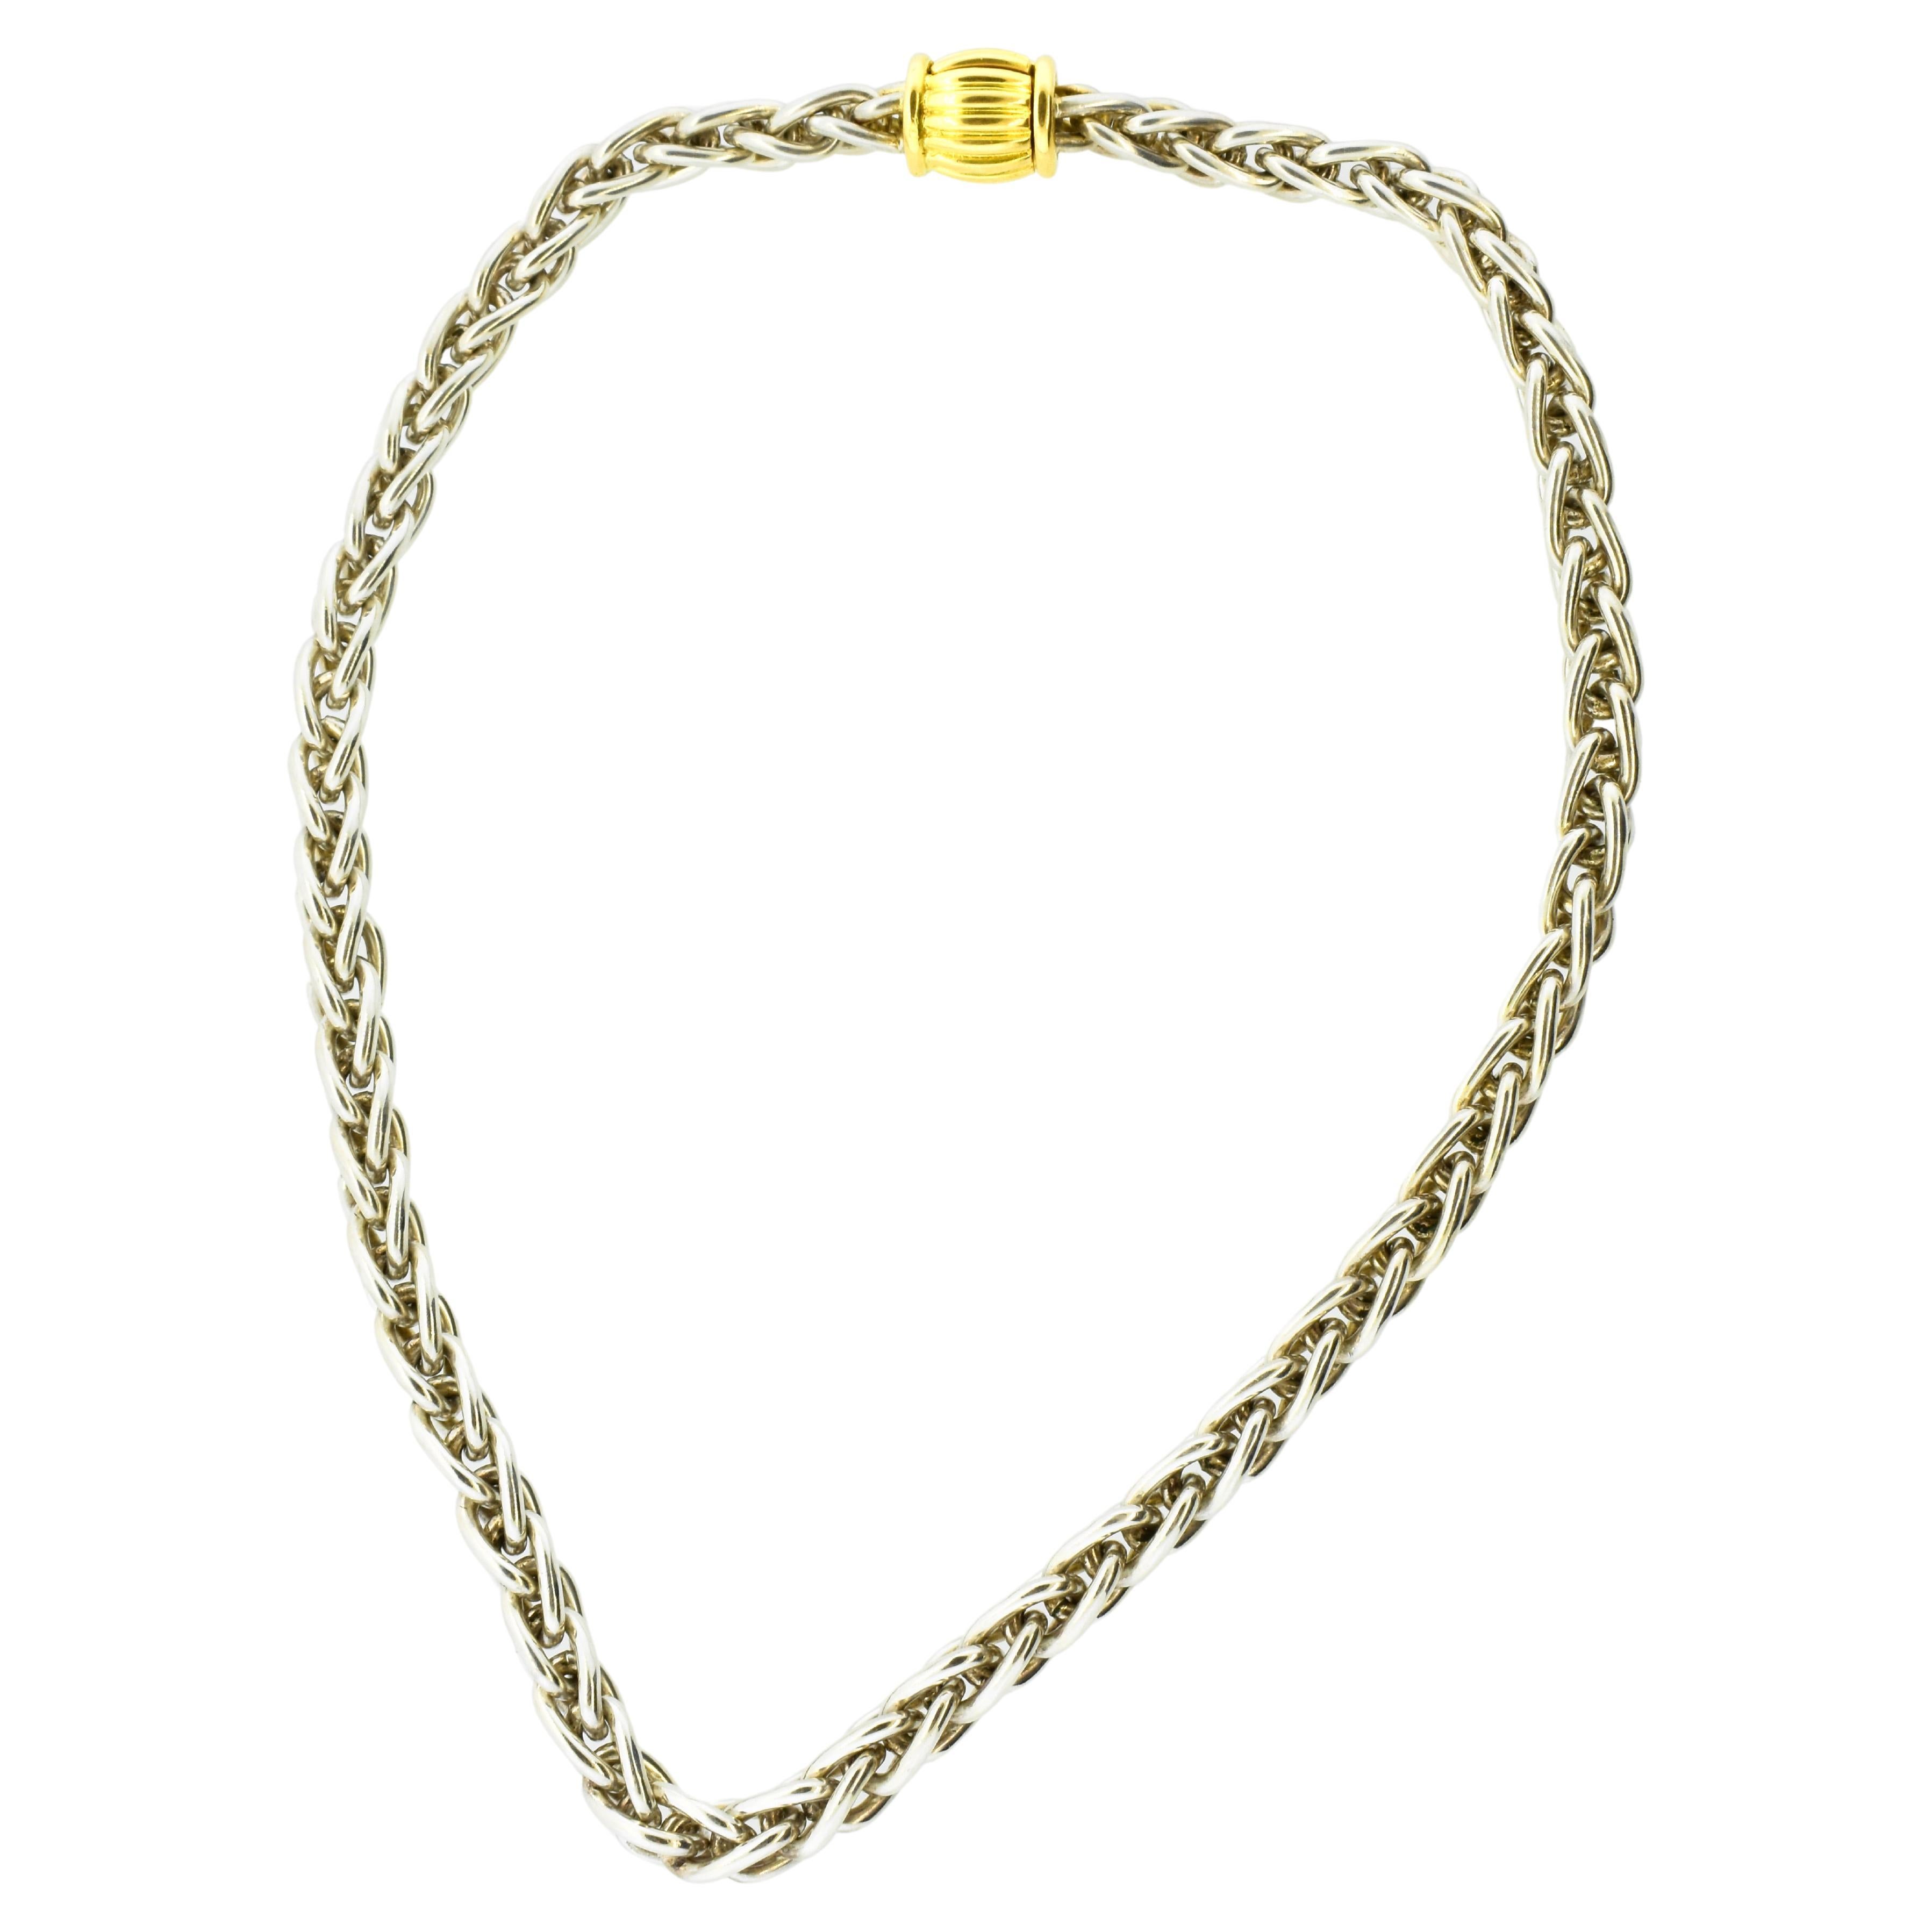 Collier vintage Hermes Paris en or jaune 18K et argent sterling.  Ce collier particulier est rarement trouvé aujourd'hui.  Le fermoir à barillet stylisé en argent 18 carats est large et robuste, la chaîne en argent 925 est un maillon complexe, le